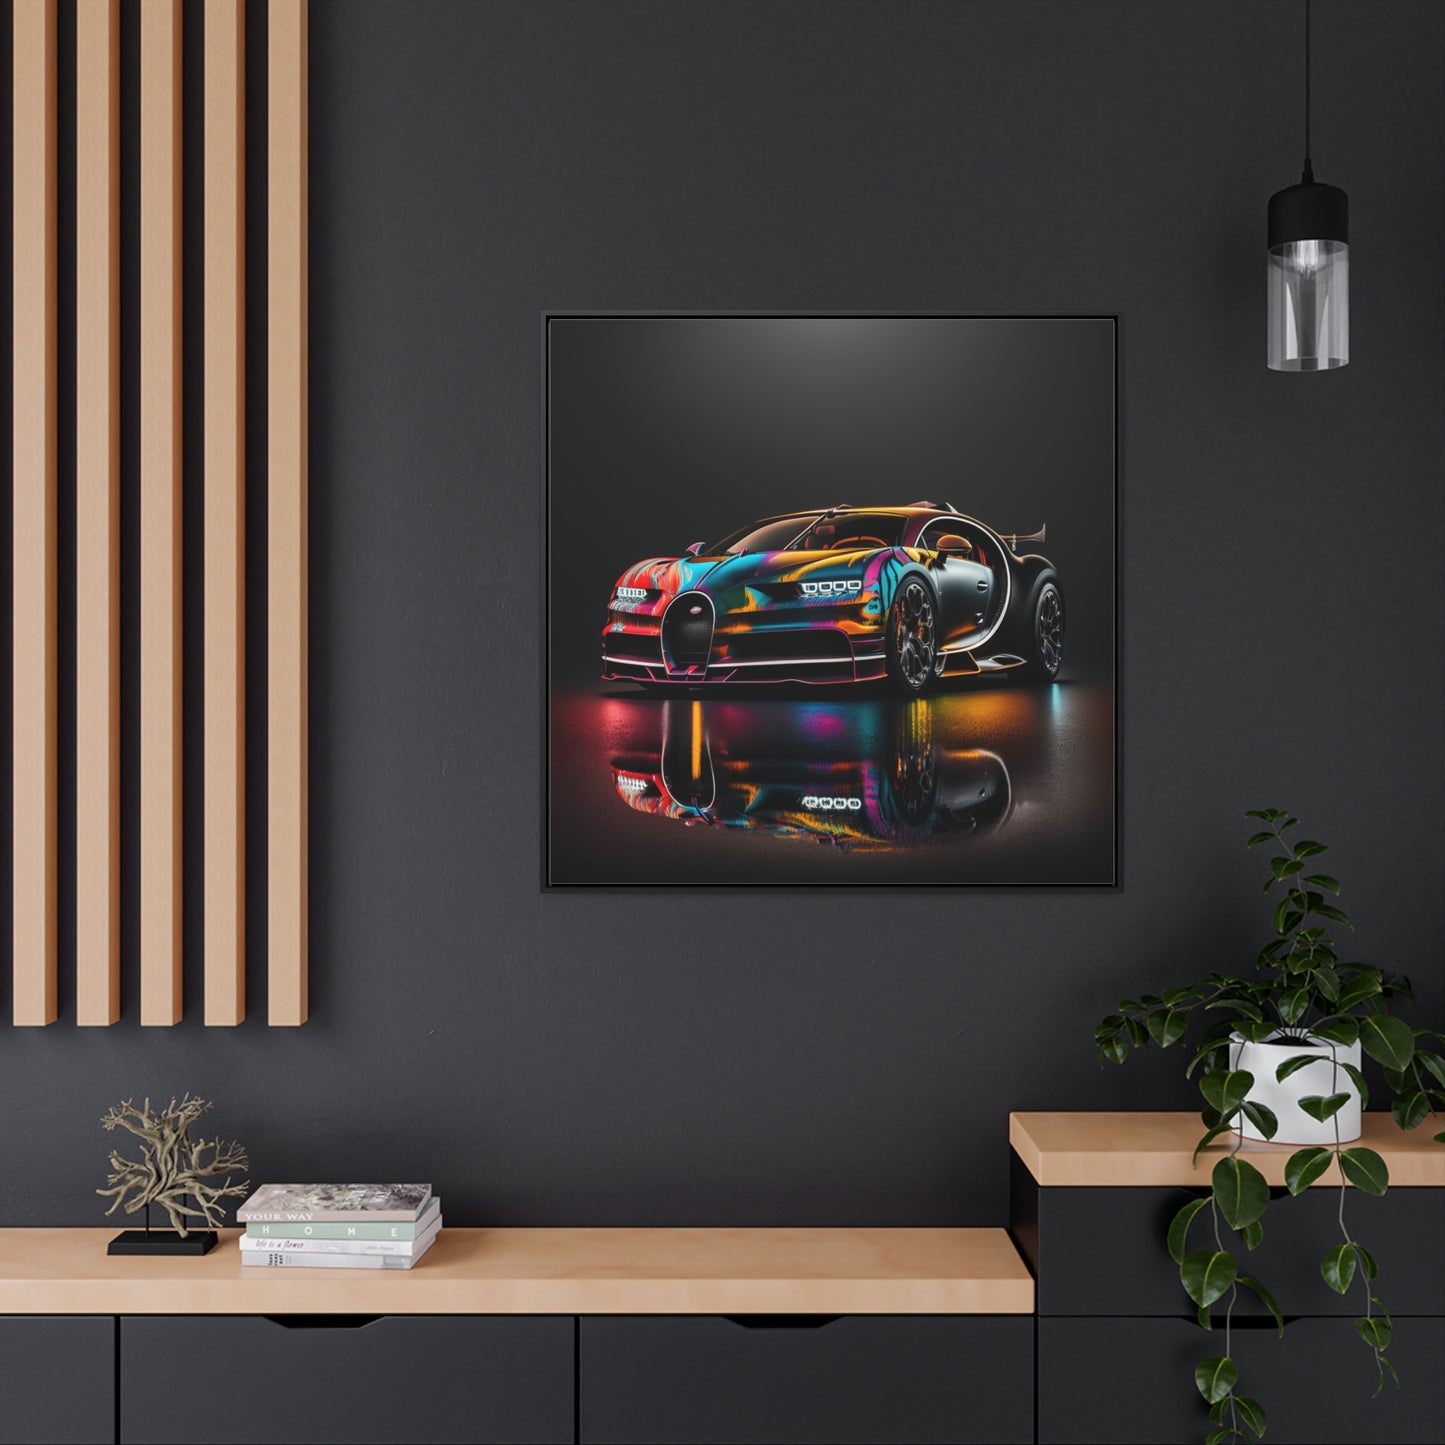 Gallery Canvas Wraps, Square Frame Bugatti Chiron Super 2